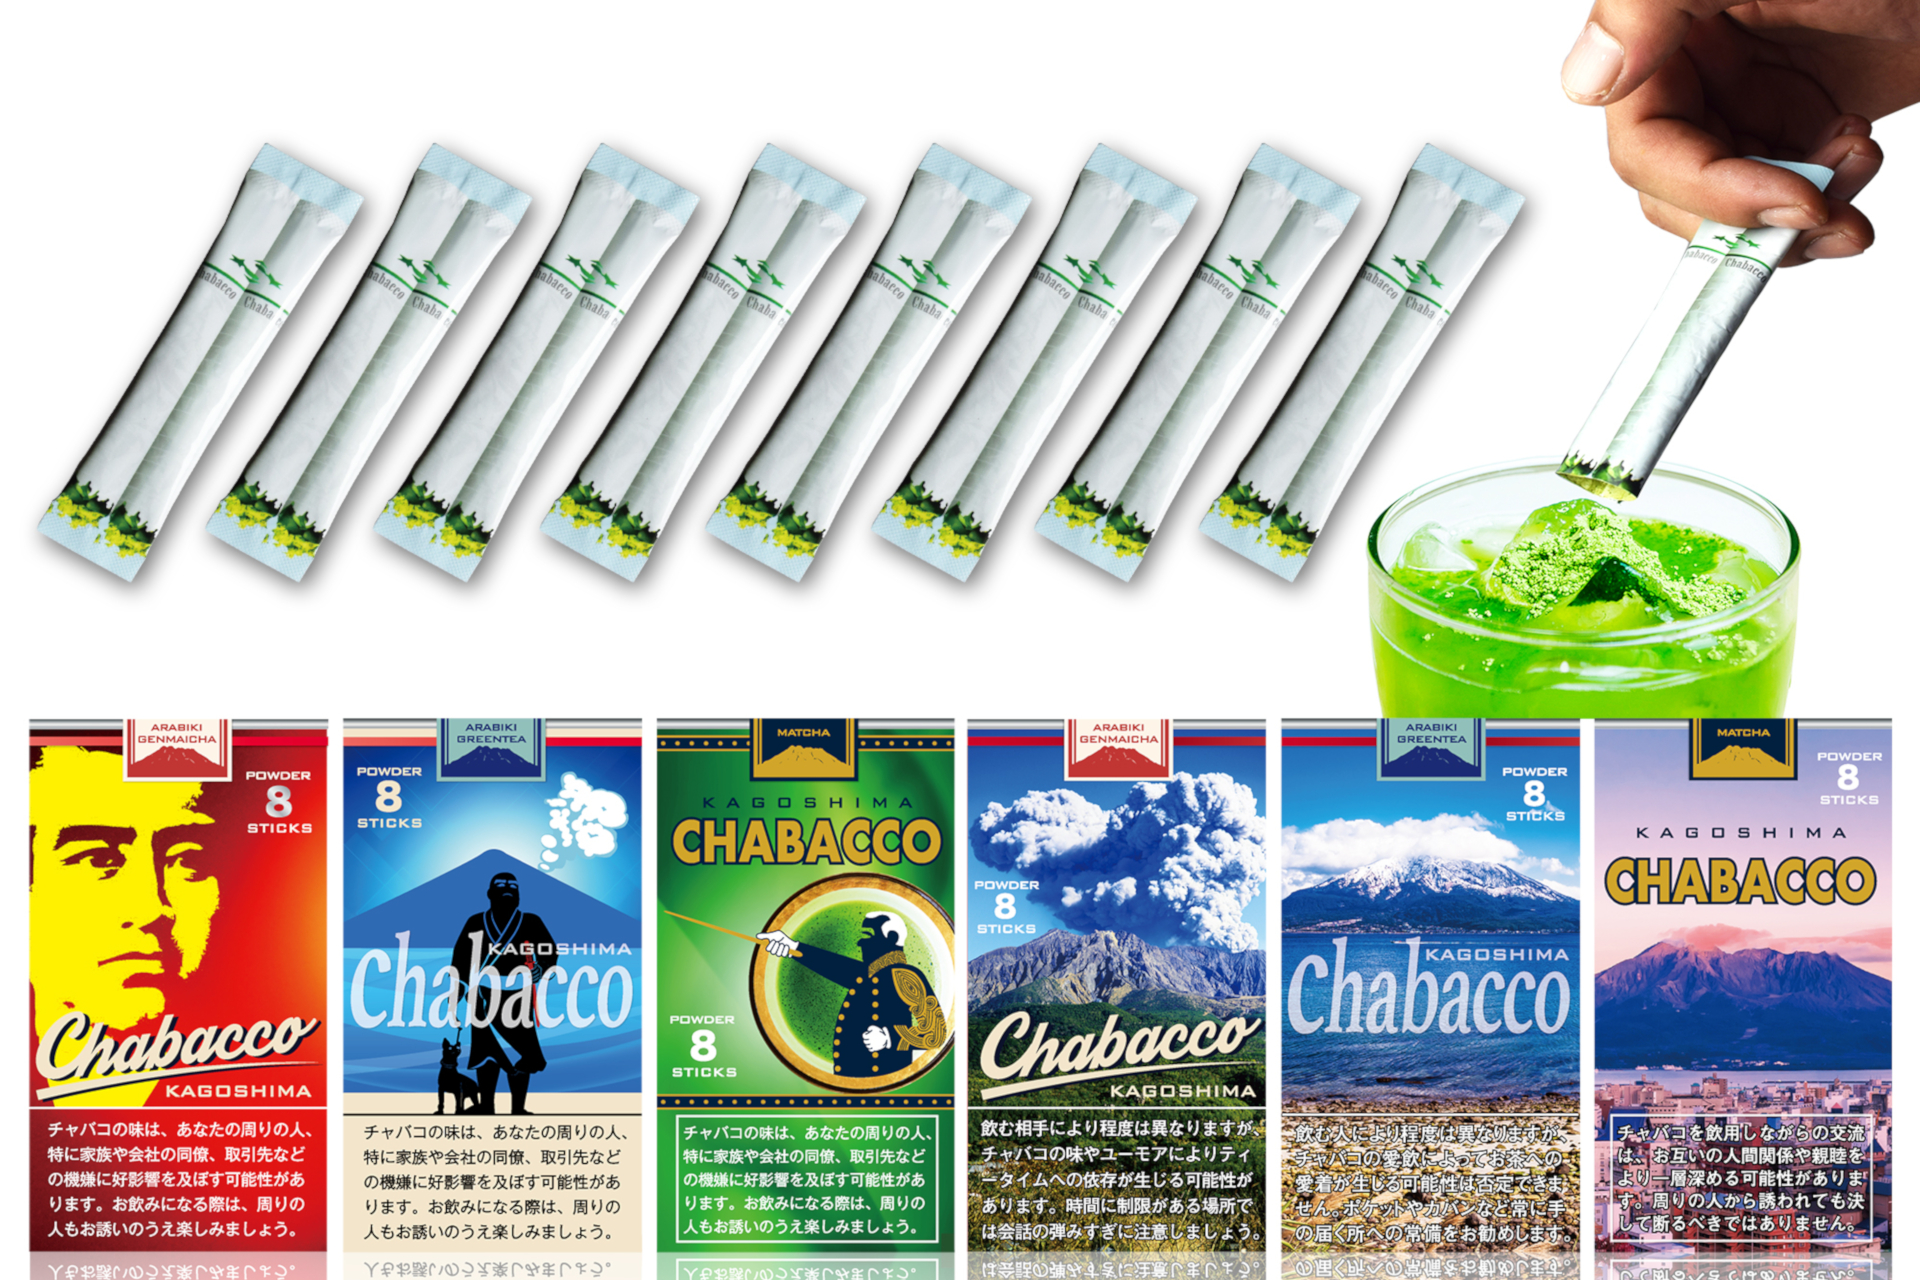 鹿児島県産の茶葉を使った「鹿児島チャバコ」5月1日発売